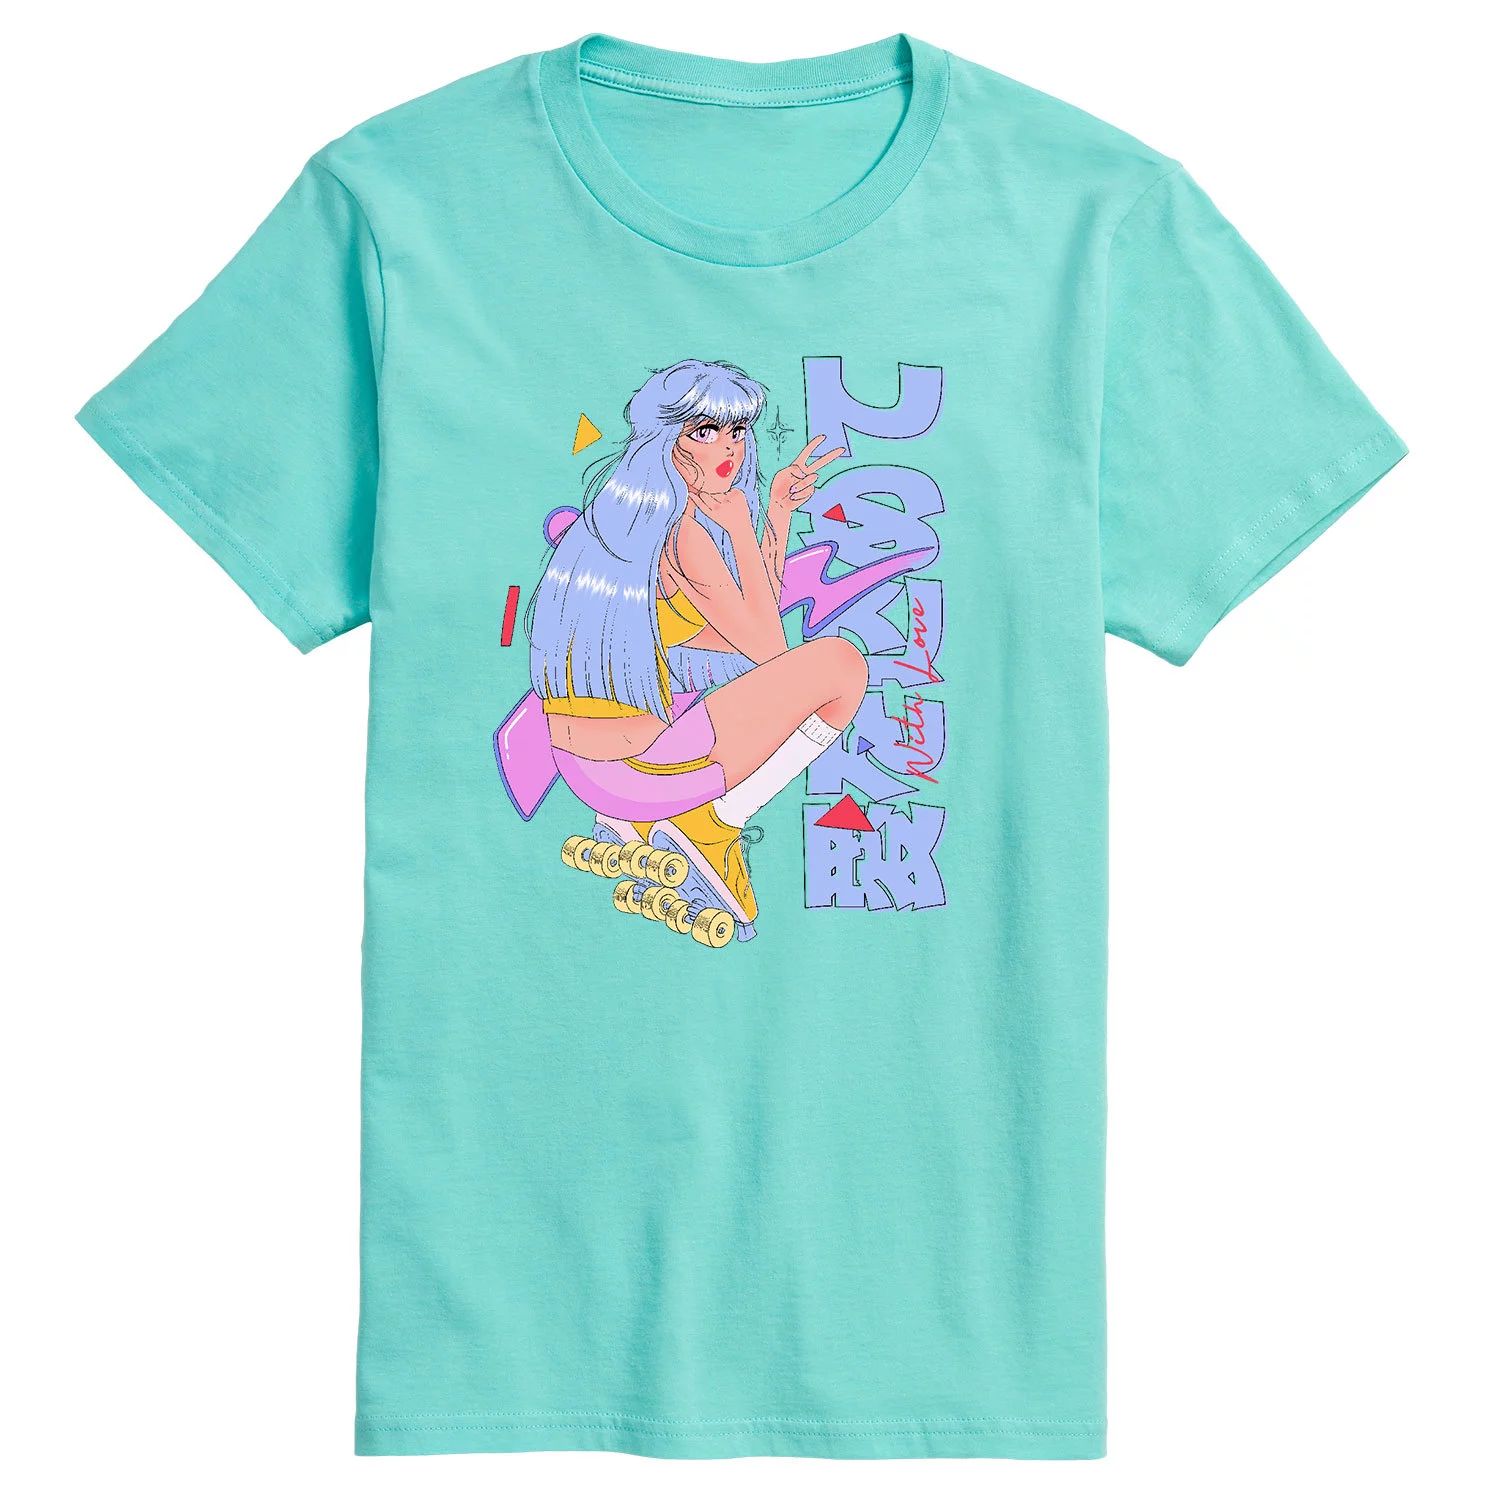 Мужская футболка «Аниме с любовью» Licensed Character мужская футболка с любовью s темно синий